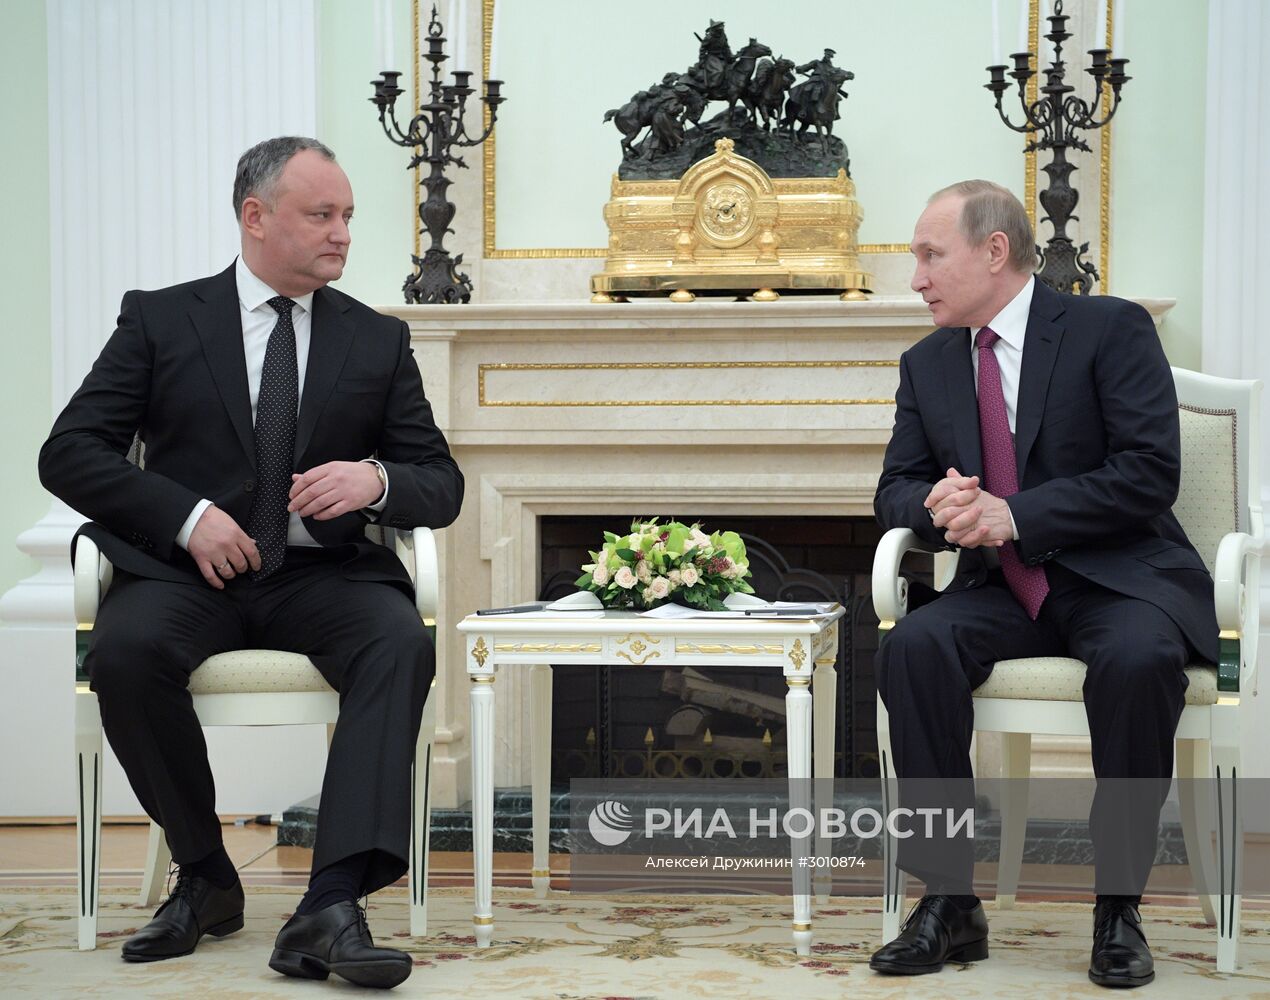 Встреча президента РФ В. Путина с президентом Молдавии И. Додоном